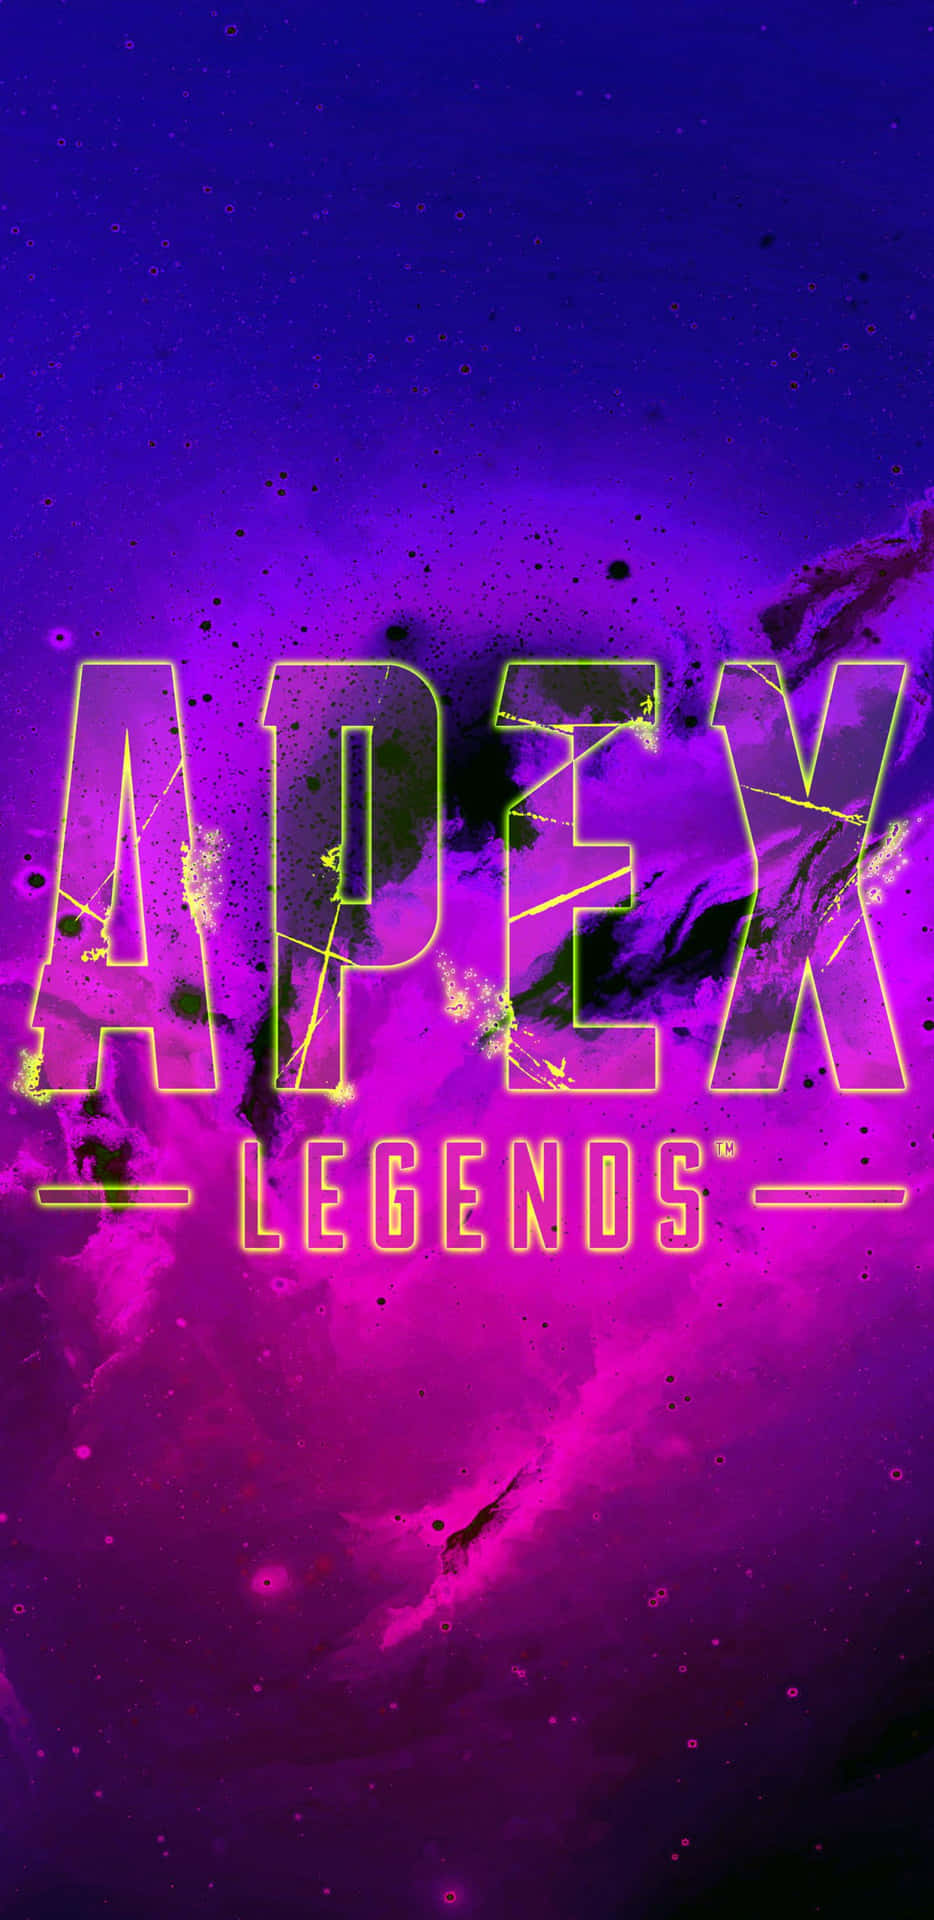 Gedig Ut På Ditt Nästa Apex Legends-äventyr Med Pixel 3xl.